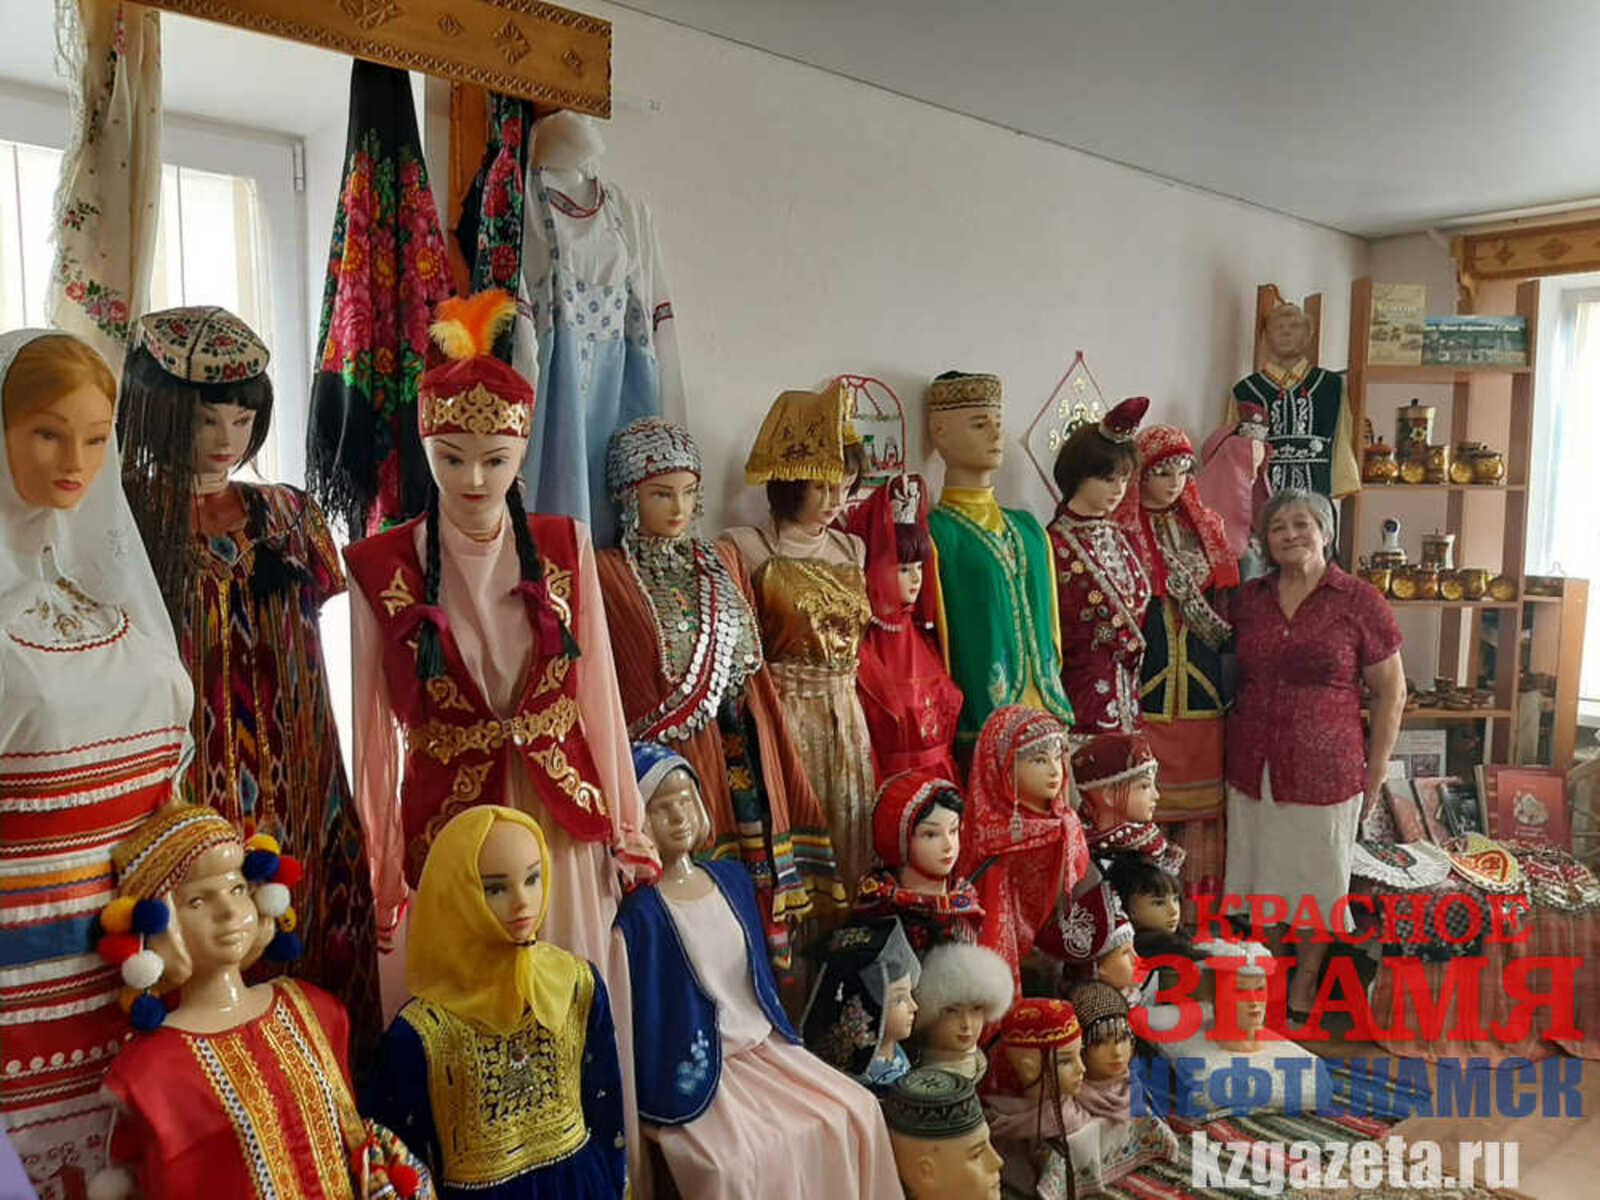 Фото: Миляуша Сиразетдинова, «КЗ».  В этно-студии выставлено более тридцати национальных костюмов, и это только начало.